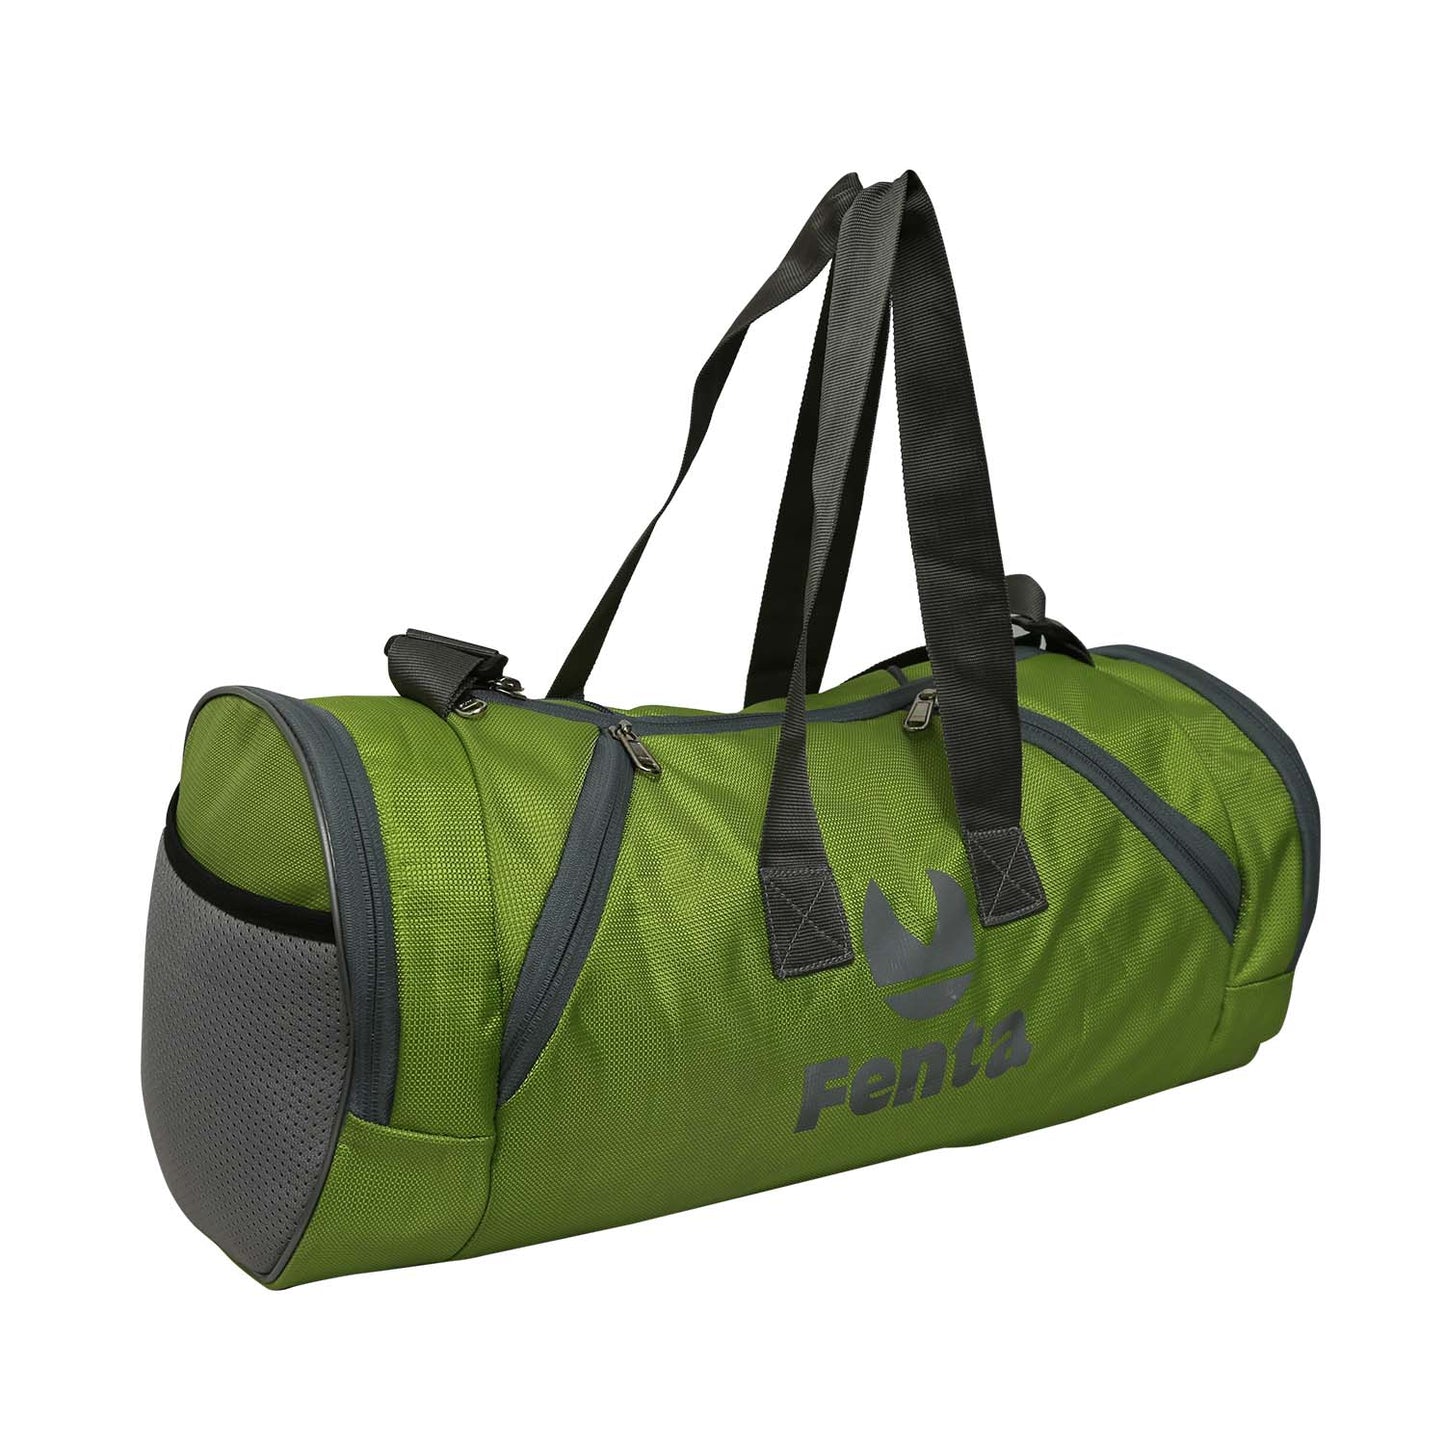 FENTA UNISEX TD-1 Travel Duffle and Gym Bag